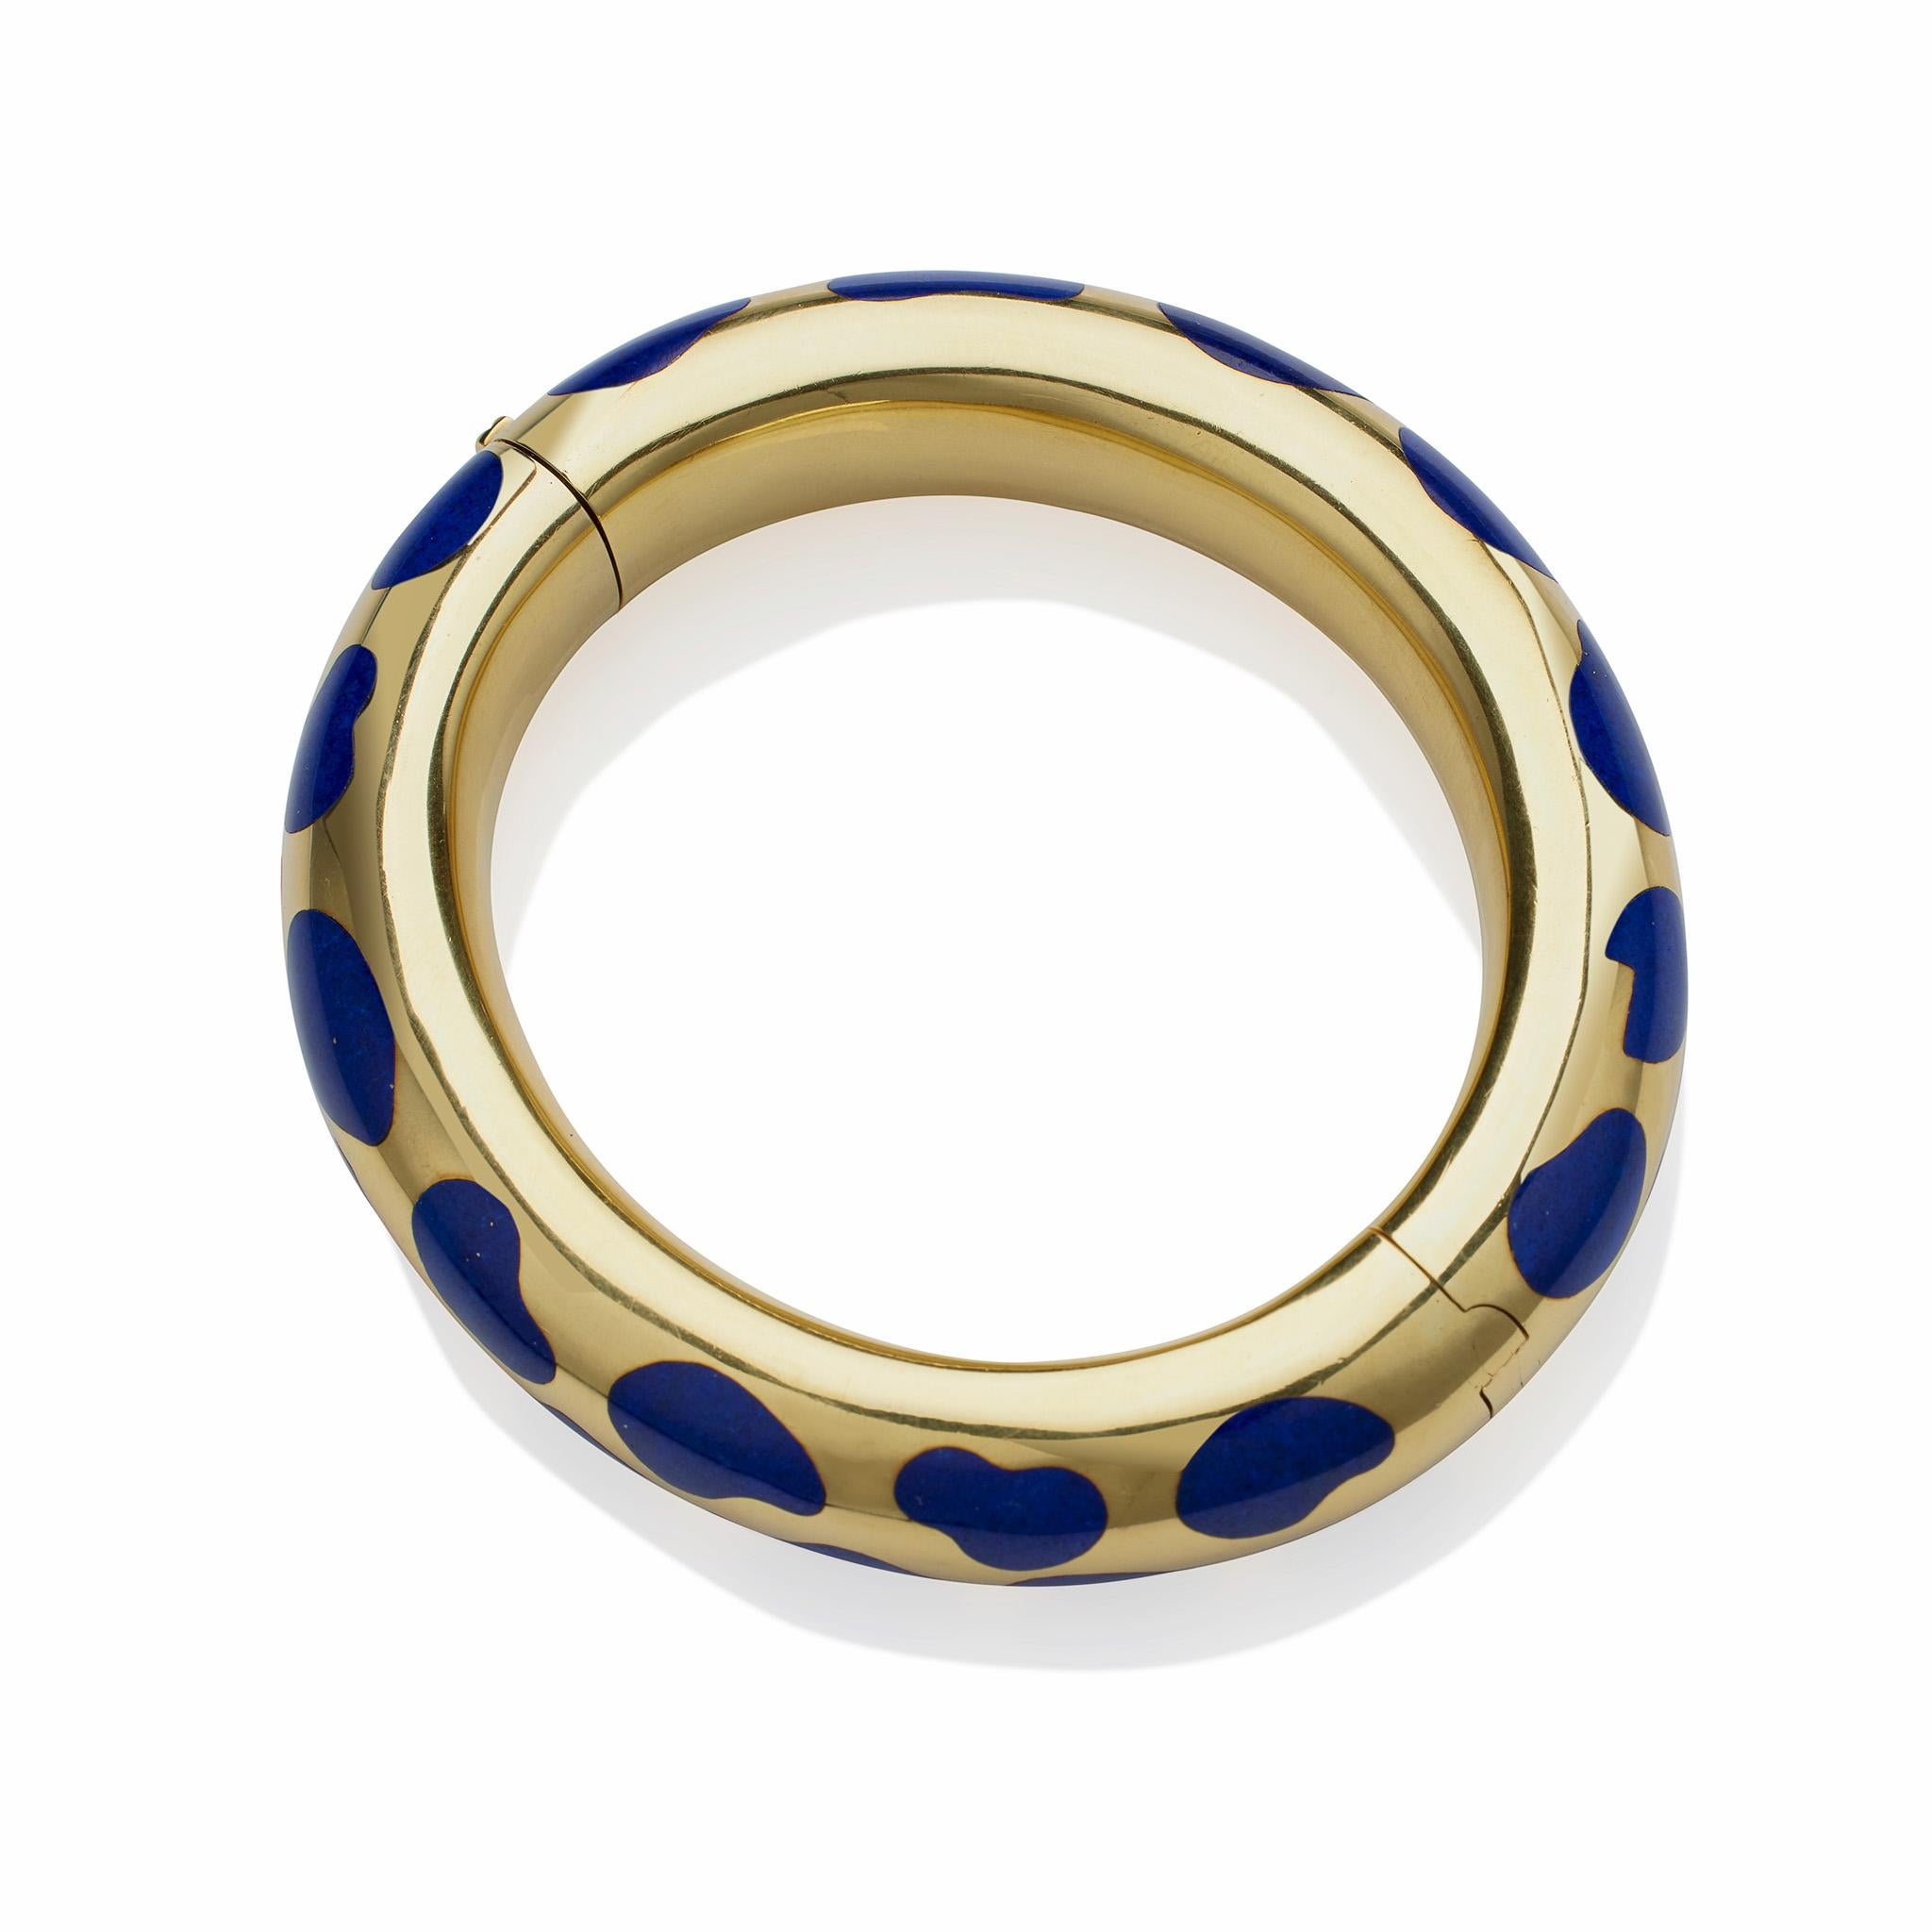 Round Cut Tiffany & Co. 18K Gold and Lapis Lazuli Bangle Bracelet by Angela Cummings